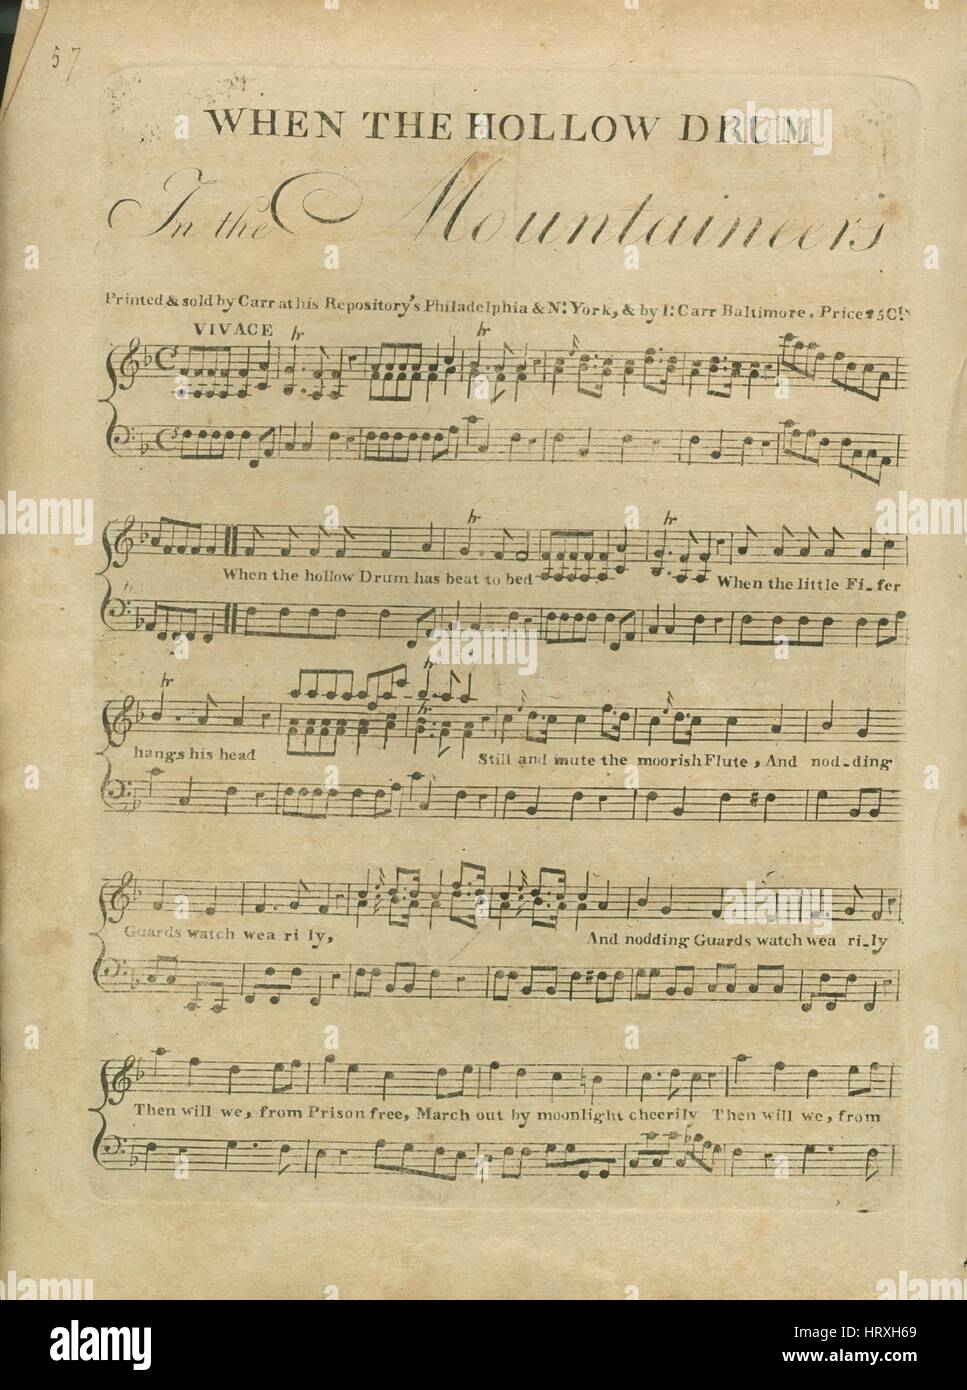 Imagen de cubierta de partituras de la canción 'Cuando el tambor hueco",  con notas de autoría original leyendo 'na', Estados Unidos, 1797. El editor  aparece como '[B.] Carr", la forma de composición